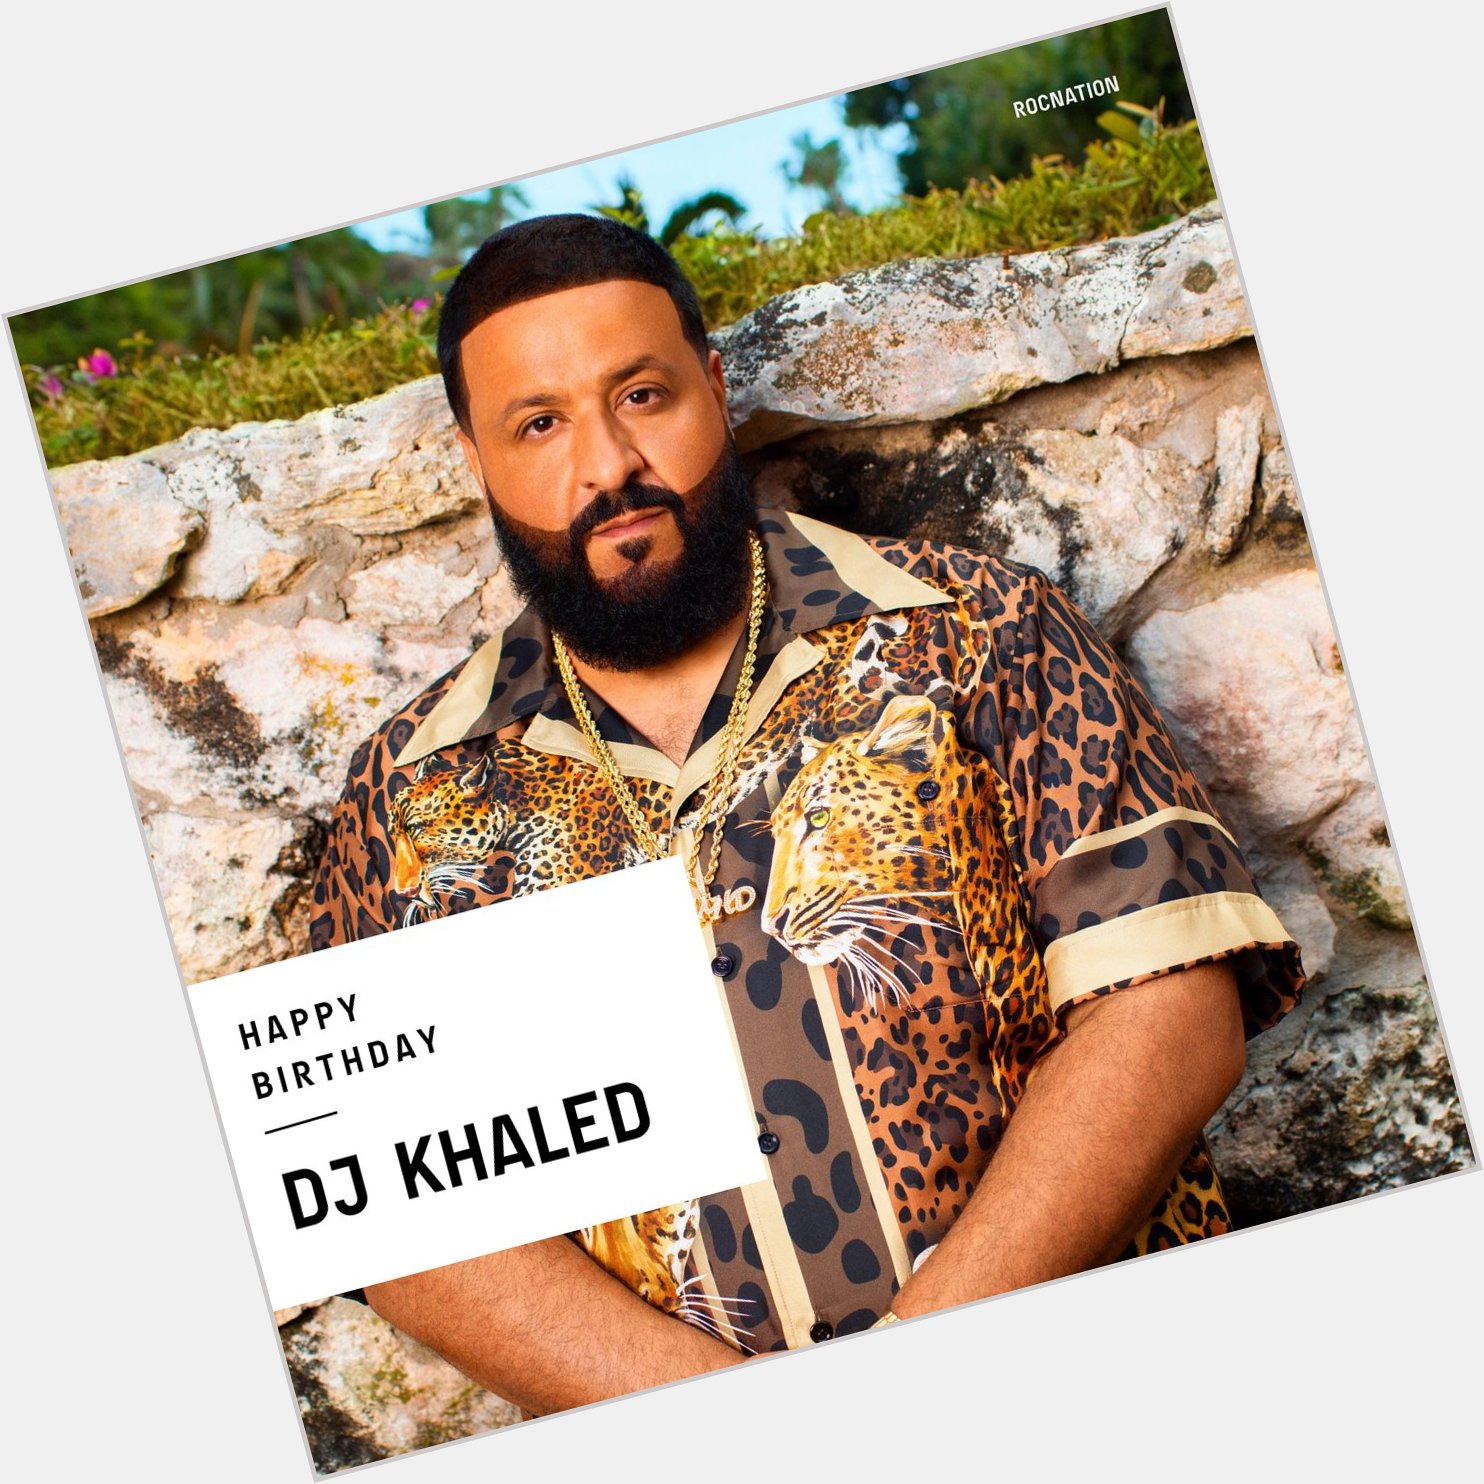 Happy 46th Birthday to DJ Khaled!! 